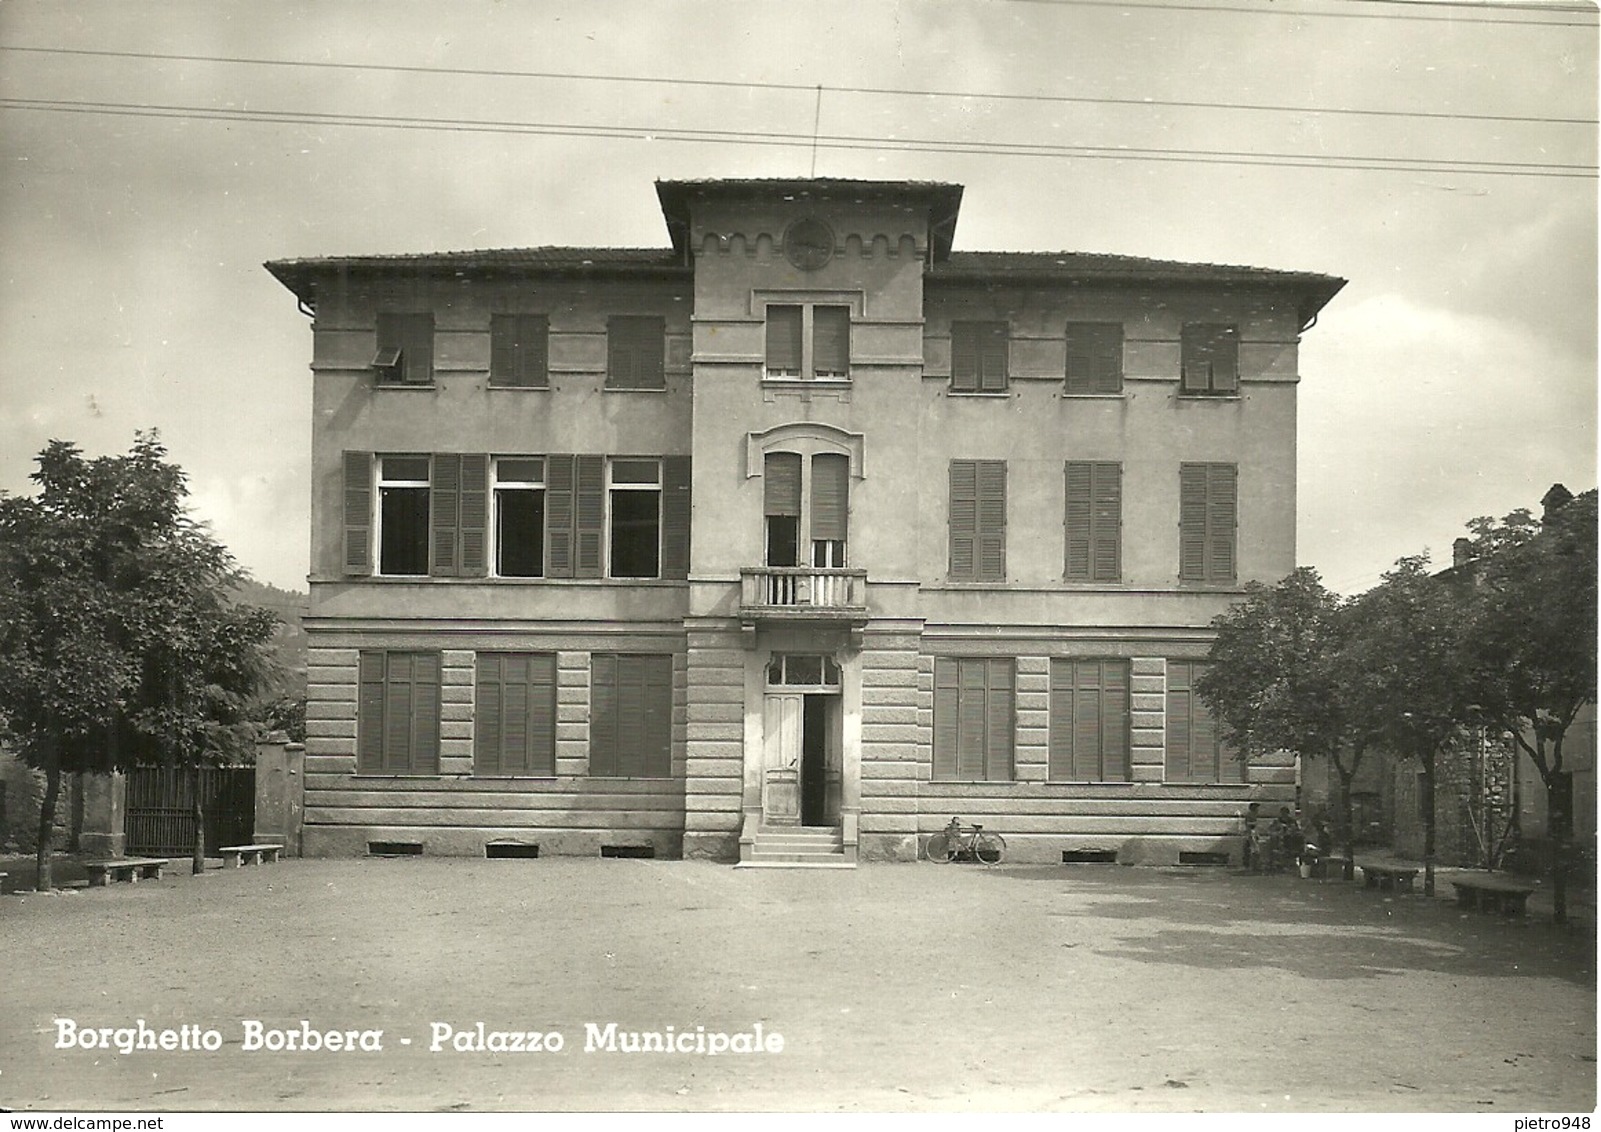 Borghetto Borbera (Alessandria) Palazzo Municipale, Town-Hall, Hotel De Ville, Rathaus - Alessandria